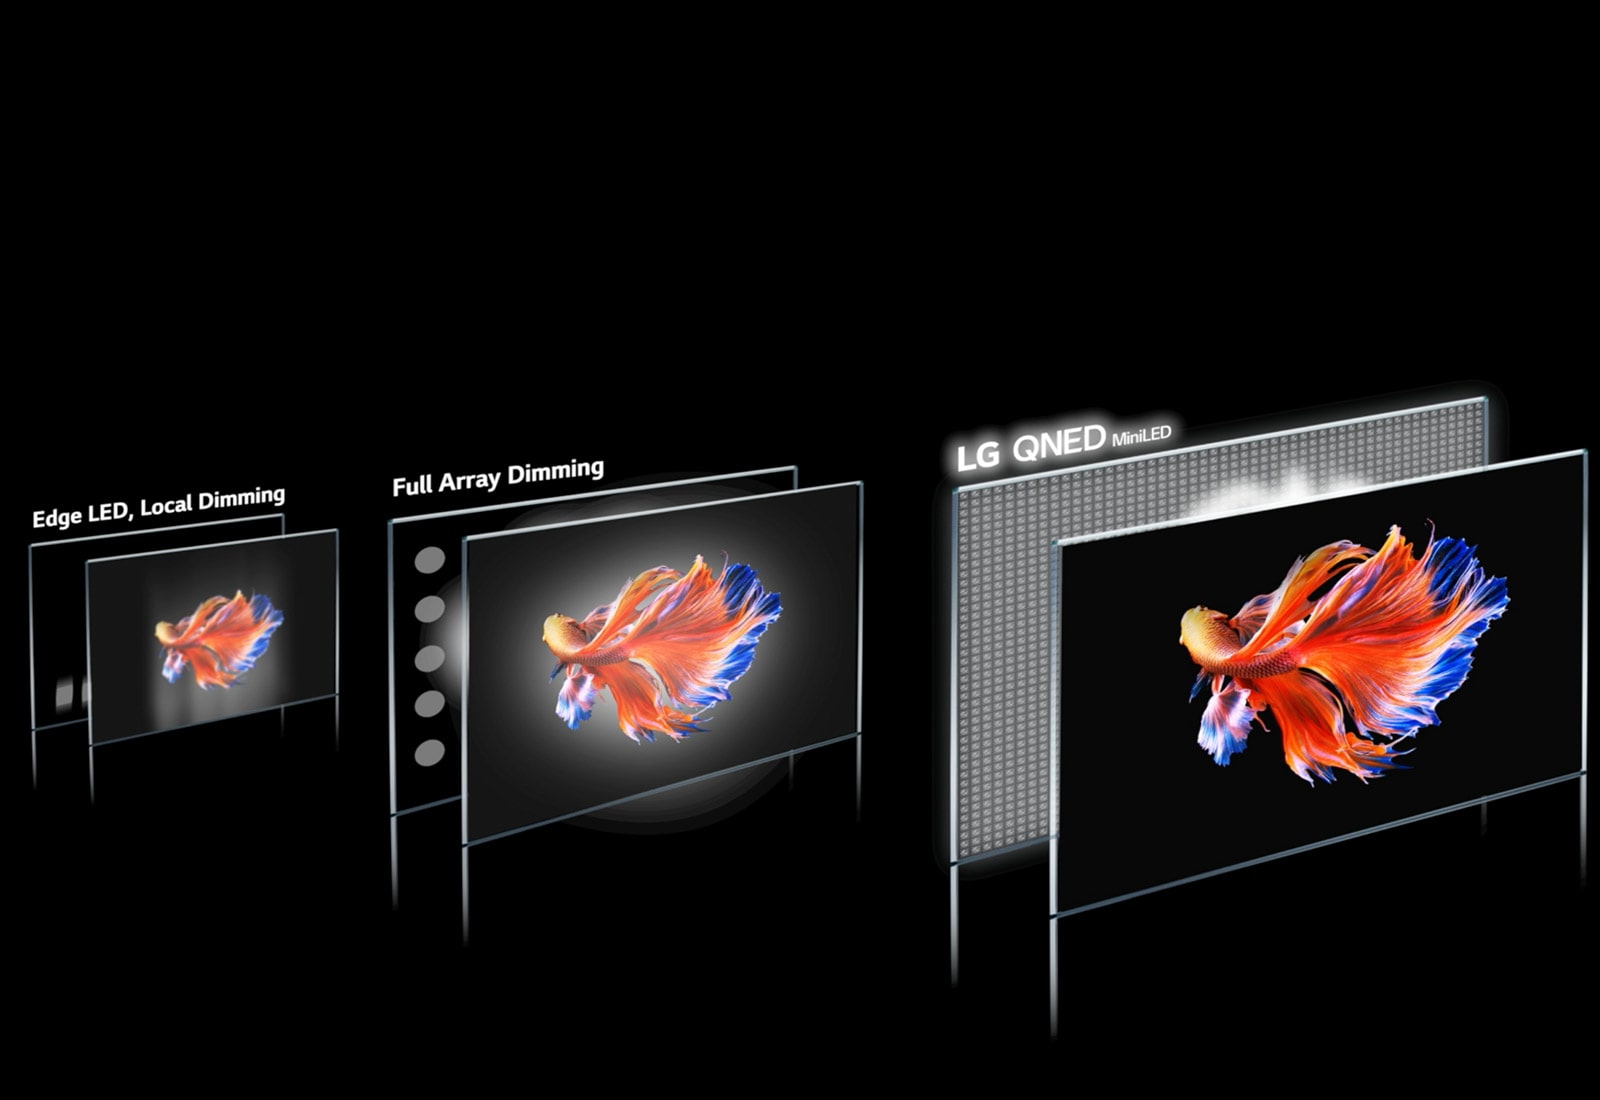 Εικόνα της τεχνολογίας ζώνης μείωσης φωτισμού και απεικόνιση ενός ψαριού Μπέτα σε μαύρο φόντο σε 3 διαφορετικές οθόνες. Η LG QNED Mini LED είναι ευκρινέστατη, με ελάχιστο φαινόμενο "φωτοστέφανου" και εντονότερα χρώματα (αναπαραγωγή βίντεο).